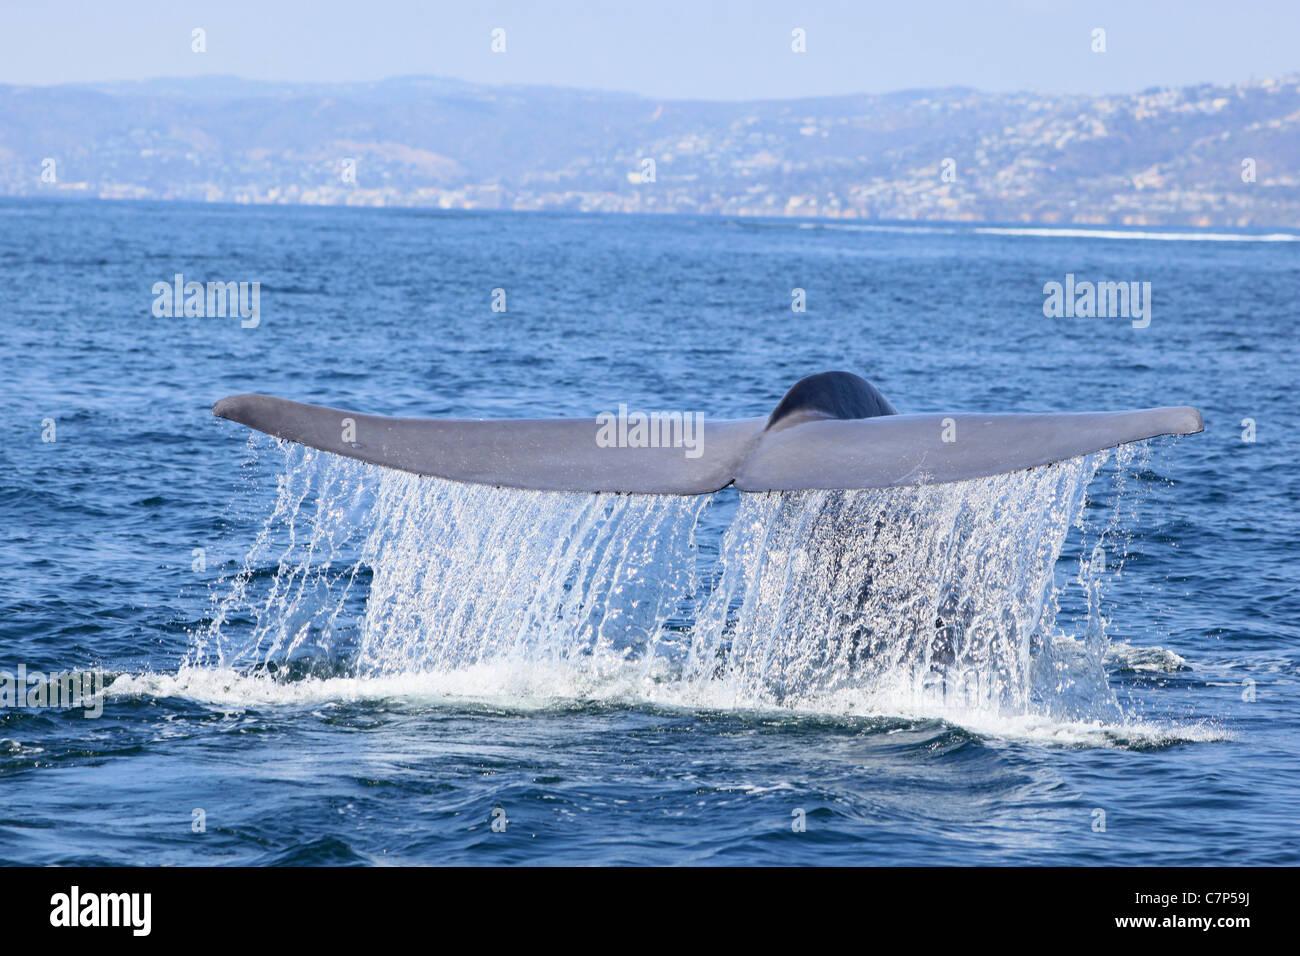 La cola de ballena azul o fluke visto con agua goteando como la ballena se sumerge en el océano, en California. Foto de stock